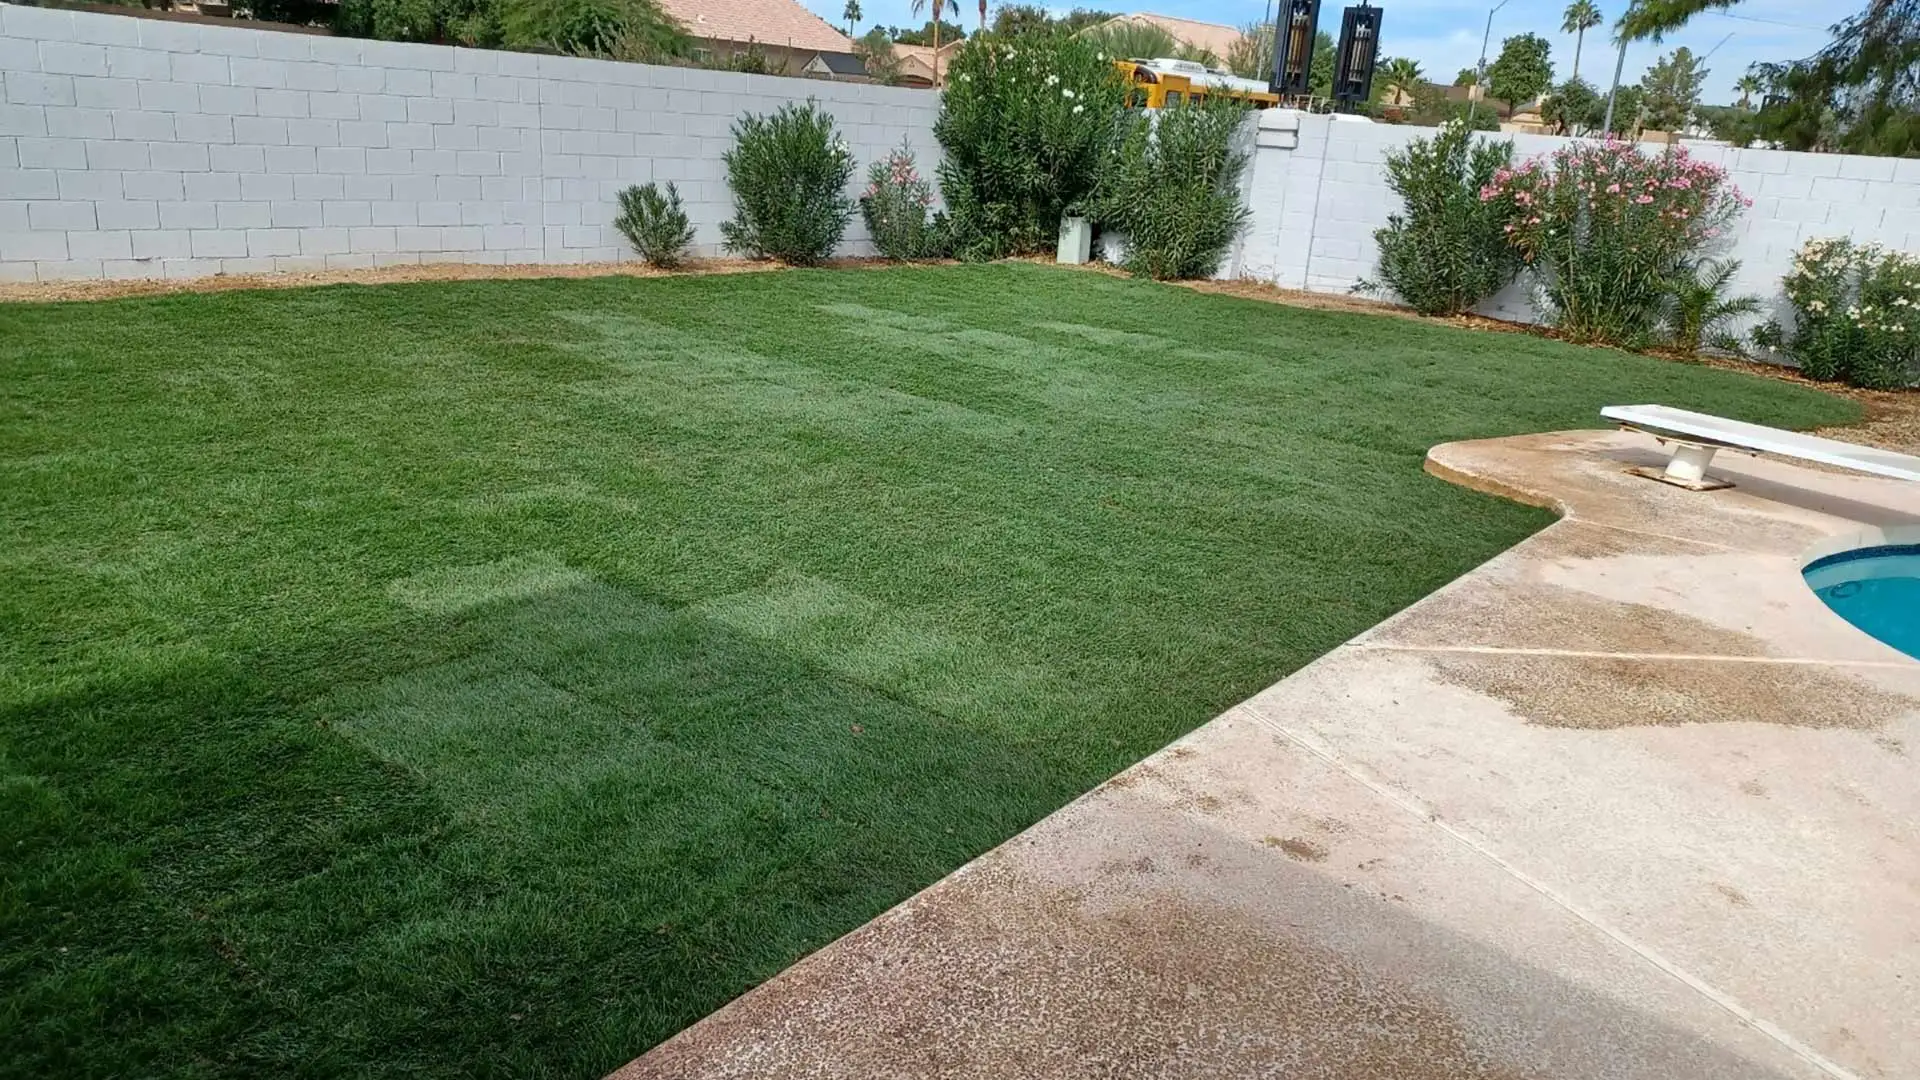 Sod installed for a backyard in Phoenix, AZ.